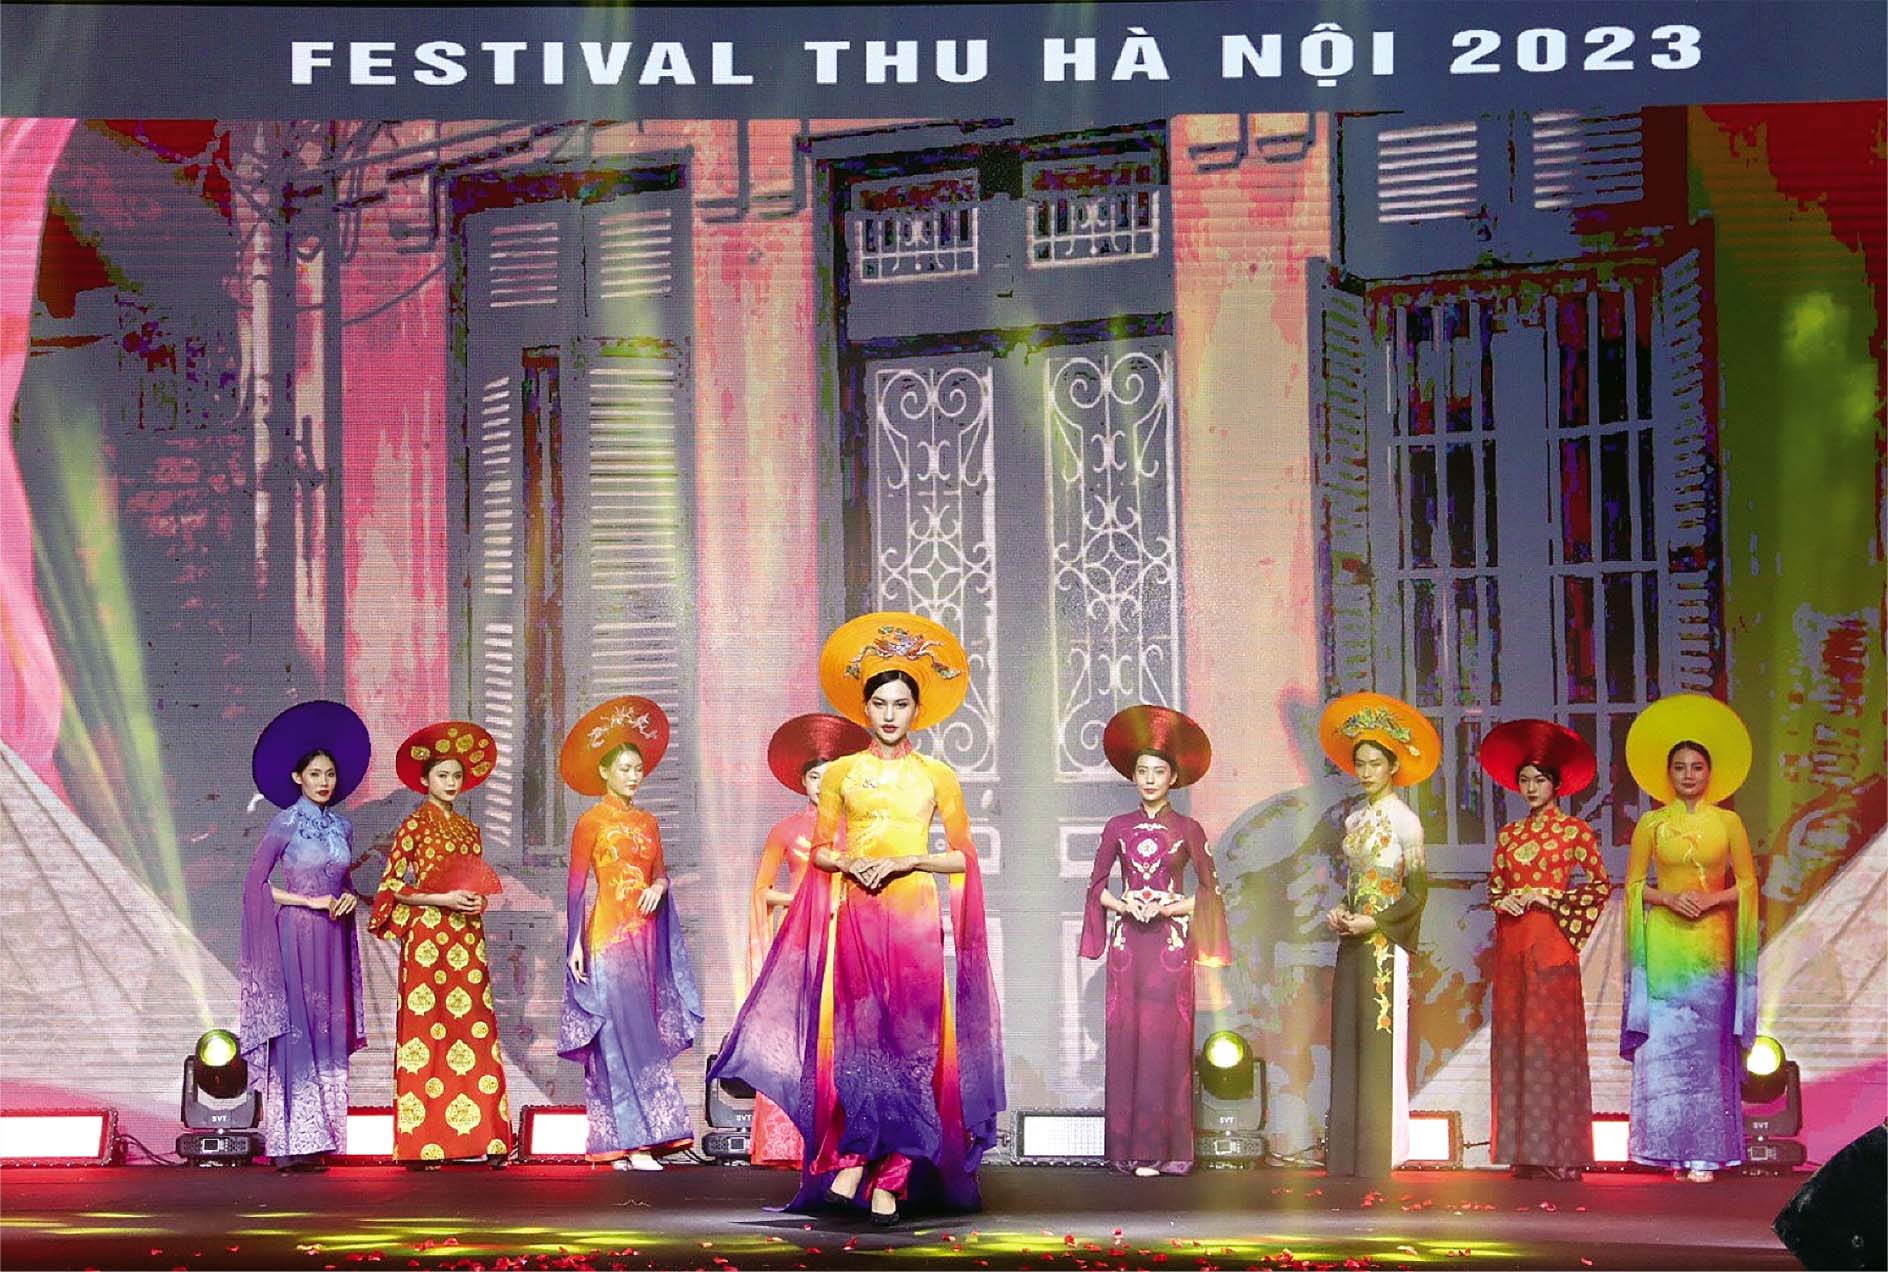 Festival Thu Hà Nội năm 2023 là một trong những điểm nhấn của du lịch Thủ đô 		Ảnh: Phương Linh